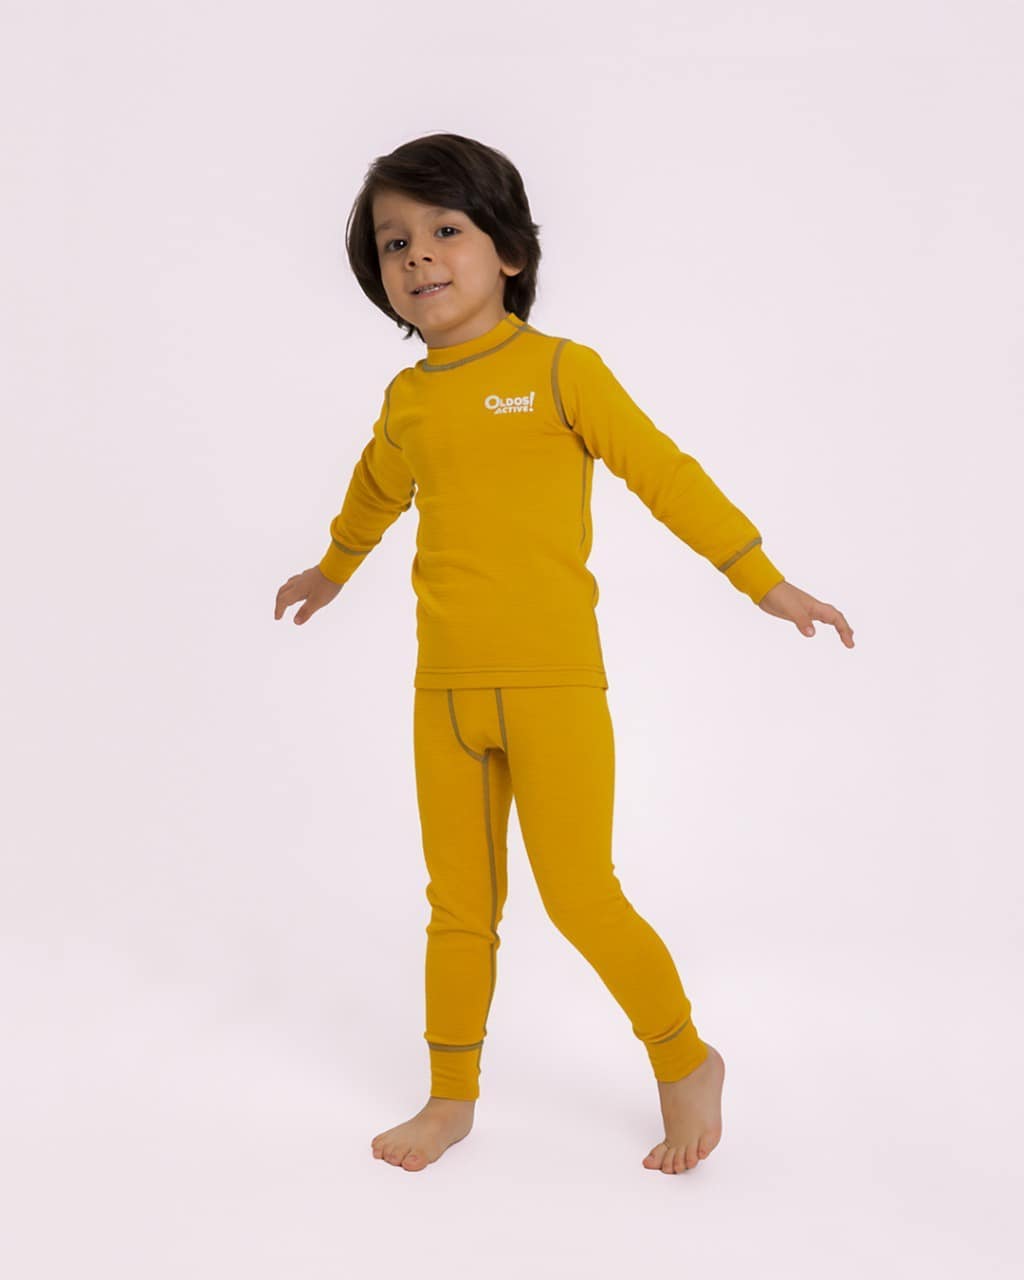 Детская одежда OLDOS - Больше цвета🎨⁣⁣

Замечали, что дети очень любят яркие цвета в одежде? Знаете, почему? Сейчас расскажем⬇⁣

🍎Яркие образы ассоциируются у детей с добрыми персонажами сказок и муль...